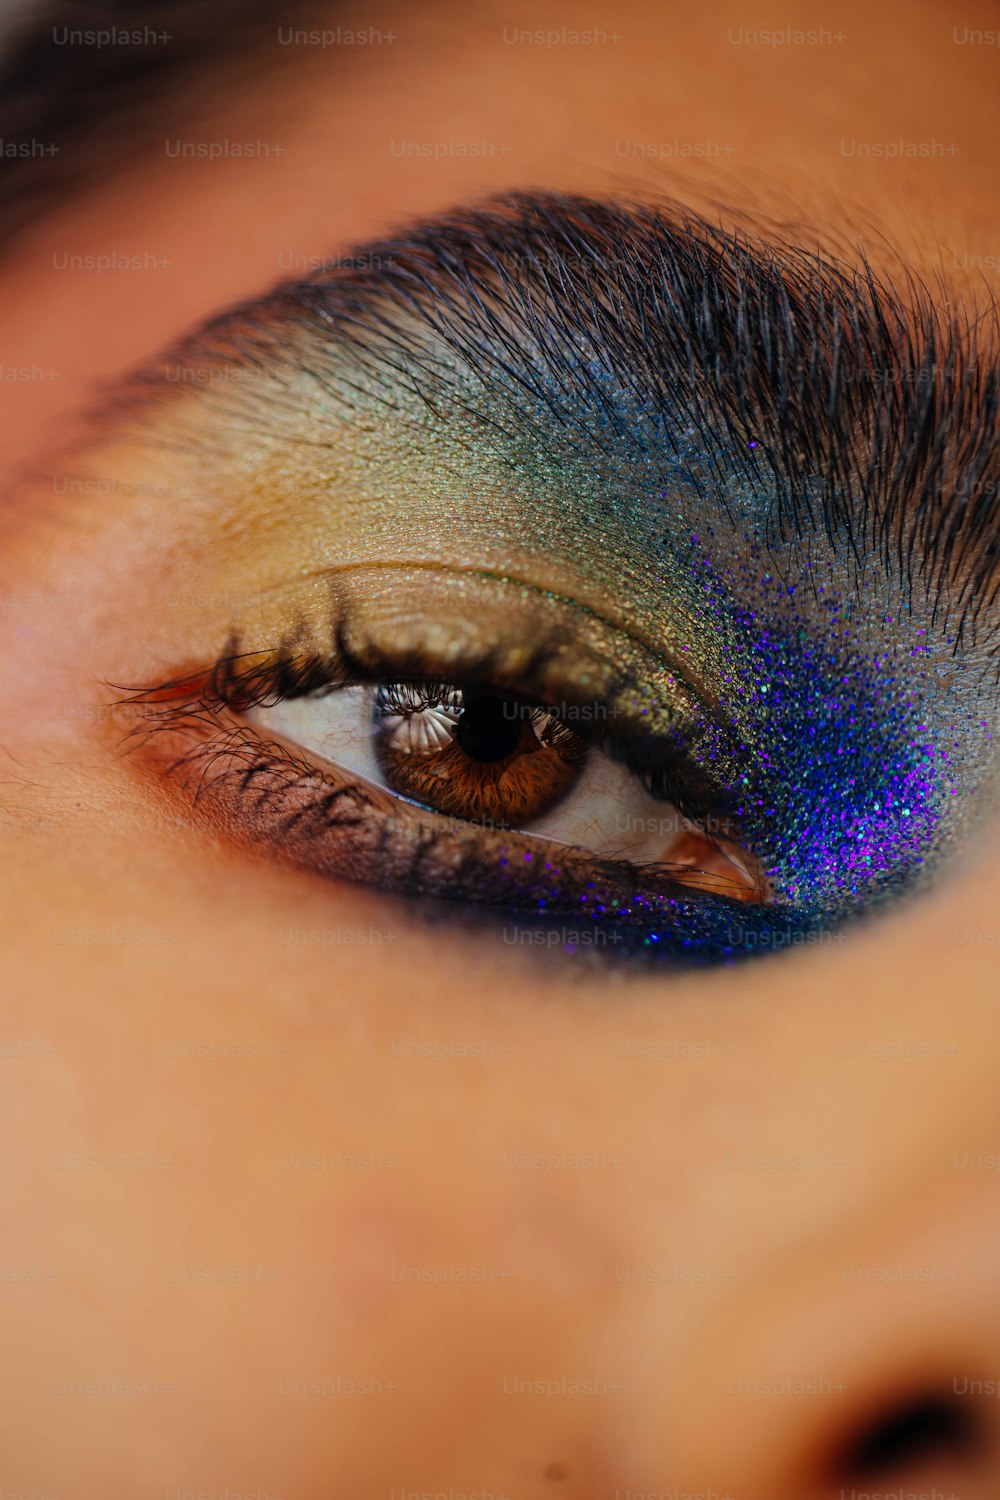 un primer plano del ojo de una persona con una sombra de ojos azul y verde